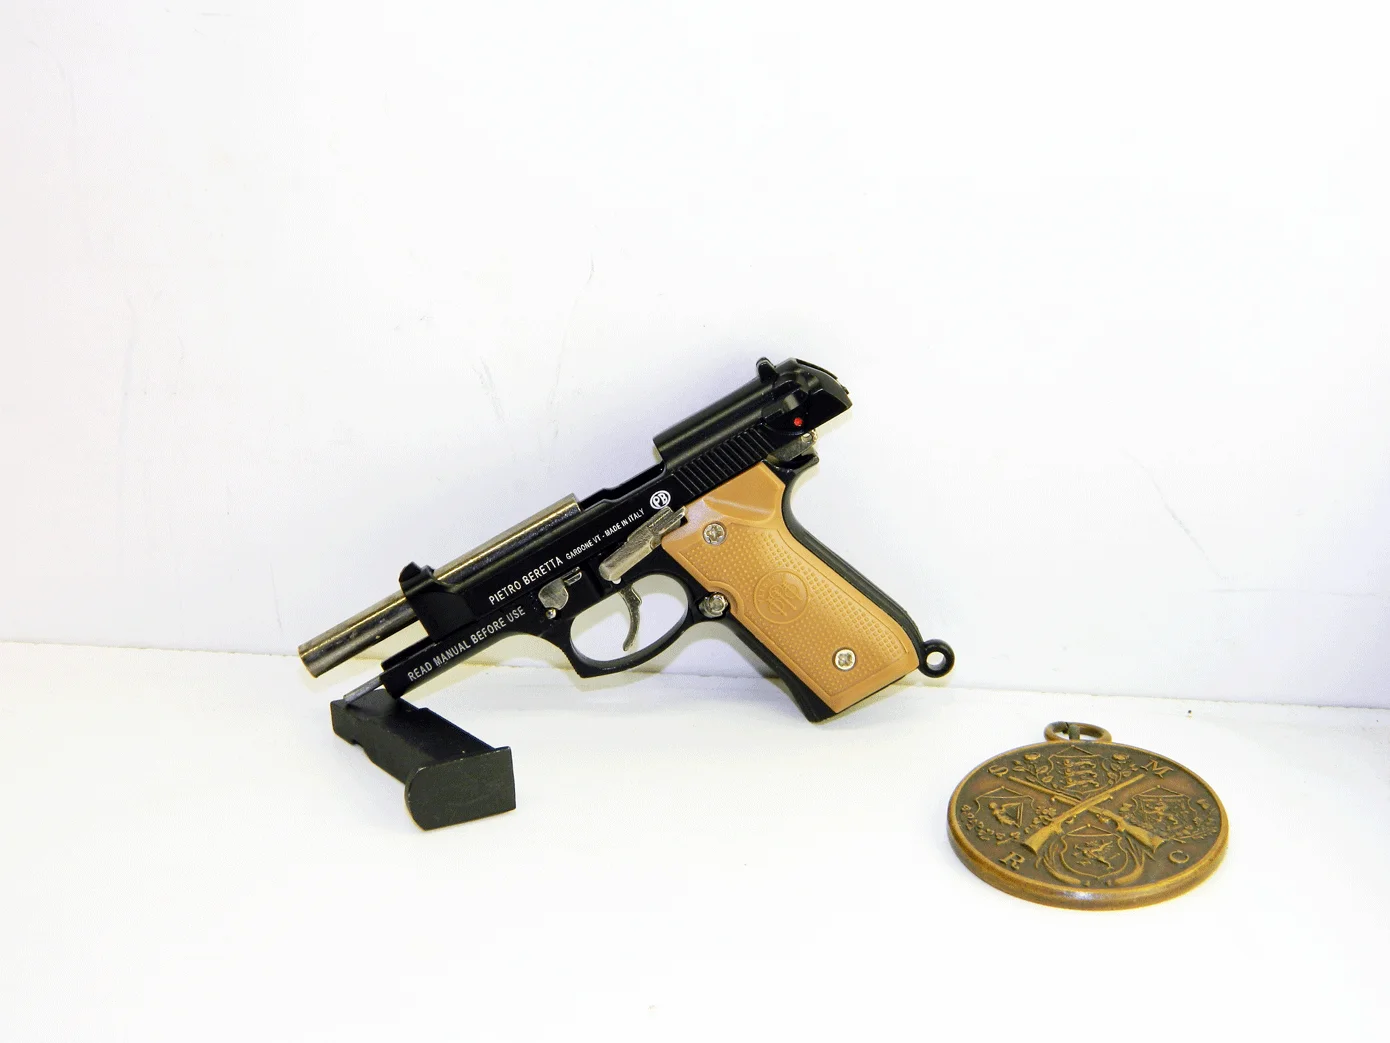 Миниатюрная игрушечная пистолет Beretta 92 PUBG для детей, масштаб 1:3.